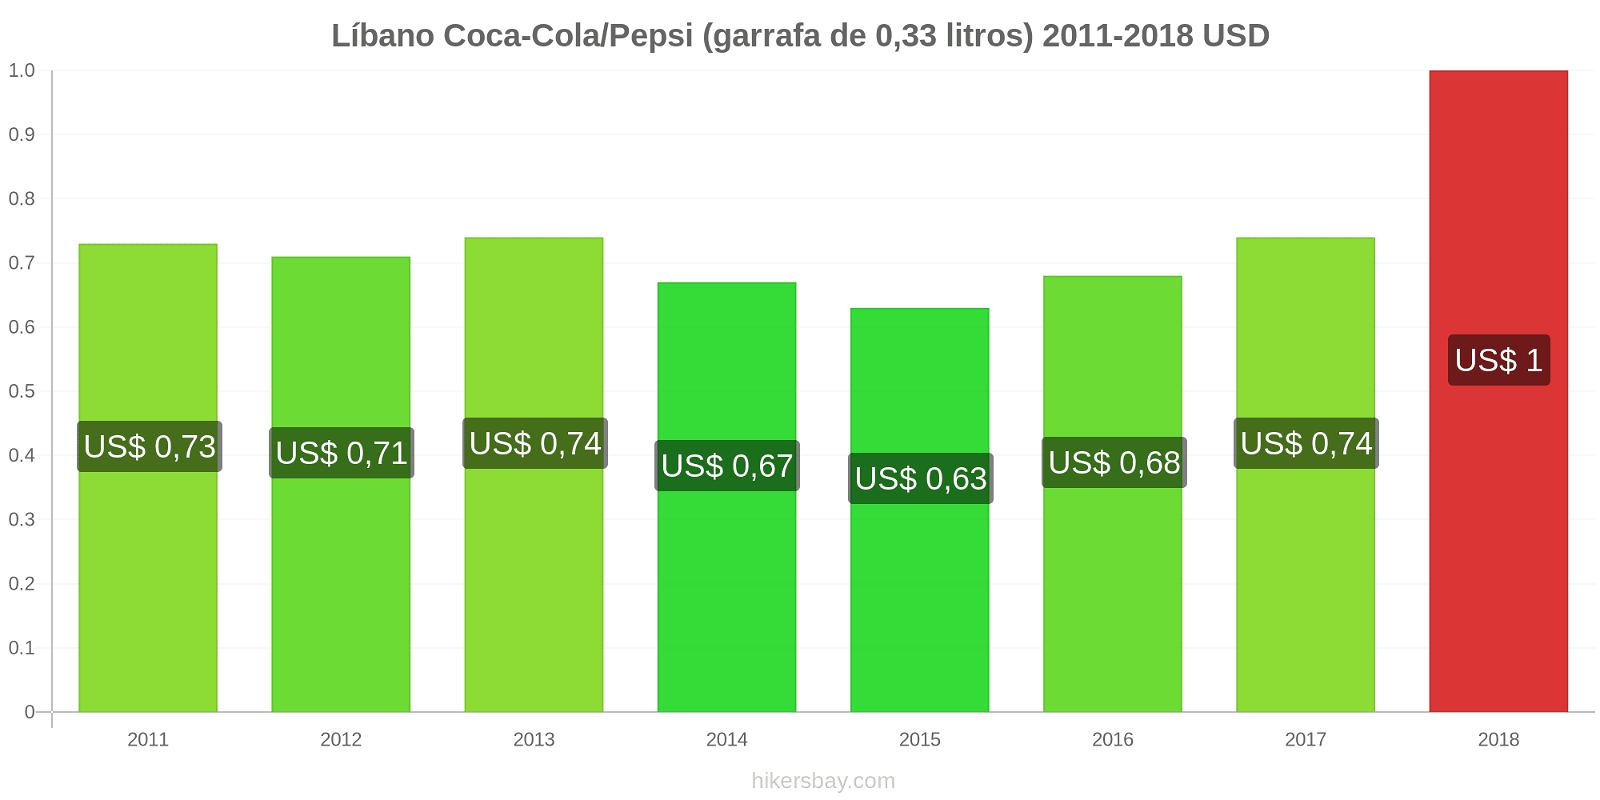 Líbano mudanças de preços Coca-Cola/Pepsi (garrafa de 0.33 litros) hikersbay.com